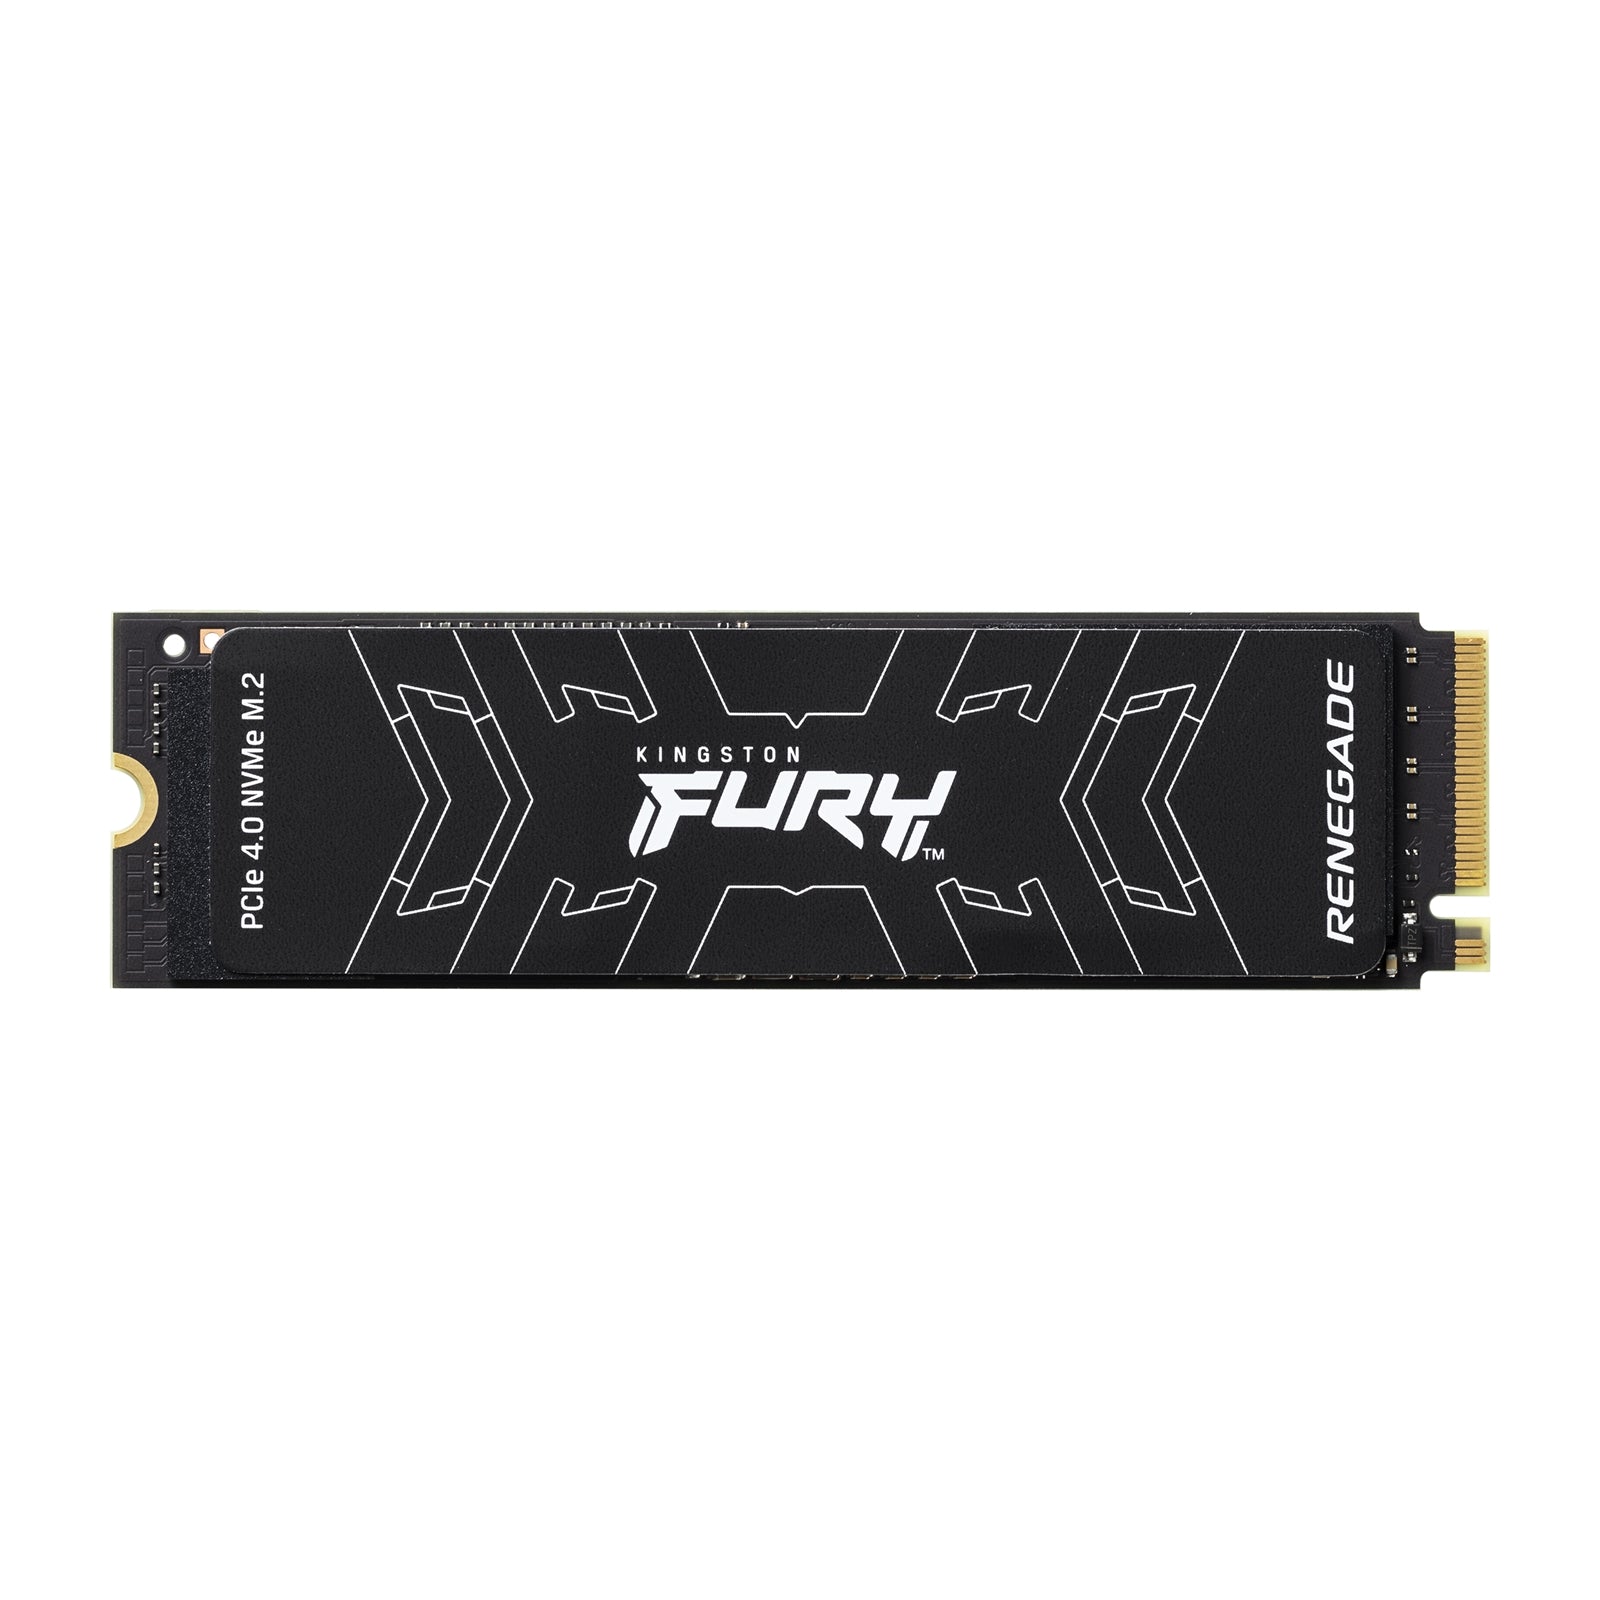 Kingston FURY Renegade 1TB PCIe 4.0 M.2 NVMe SSD